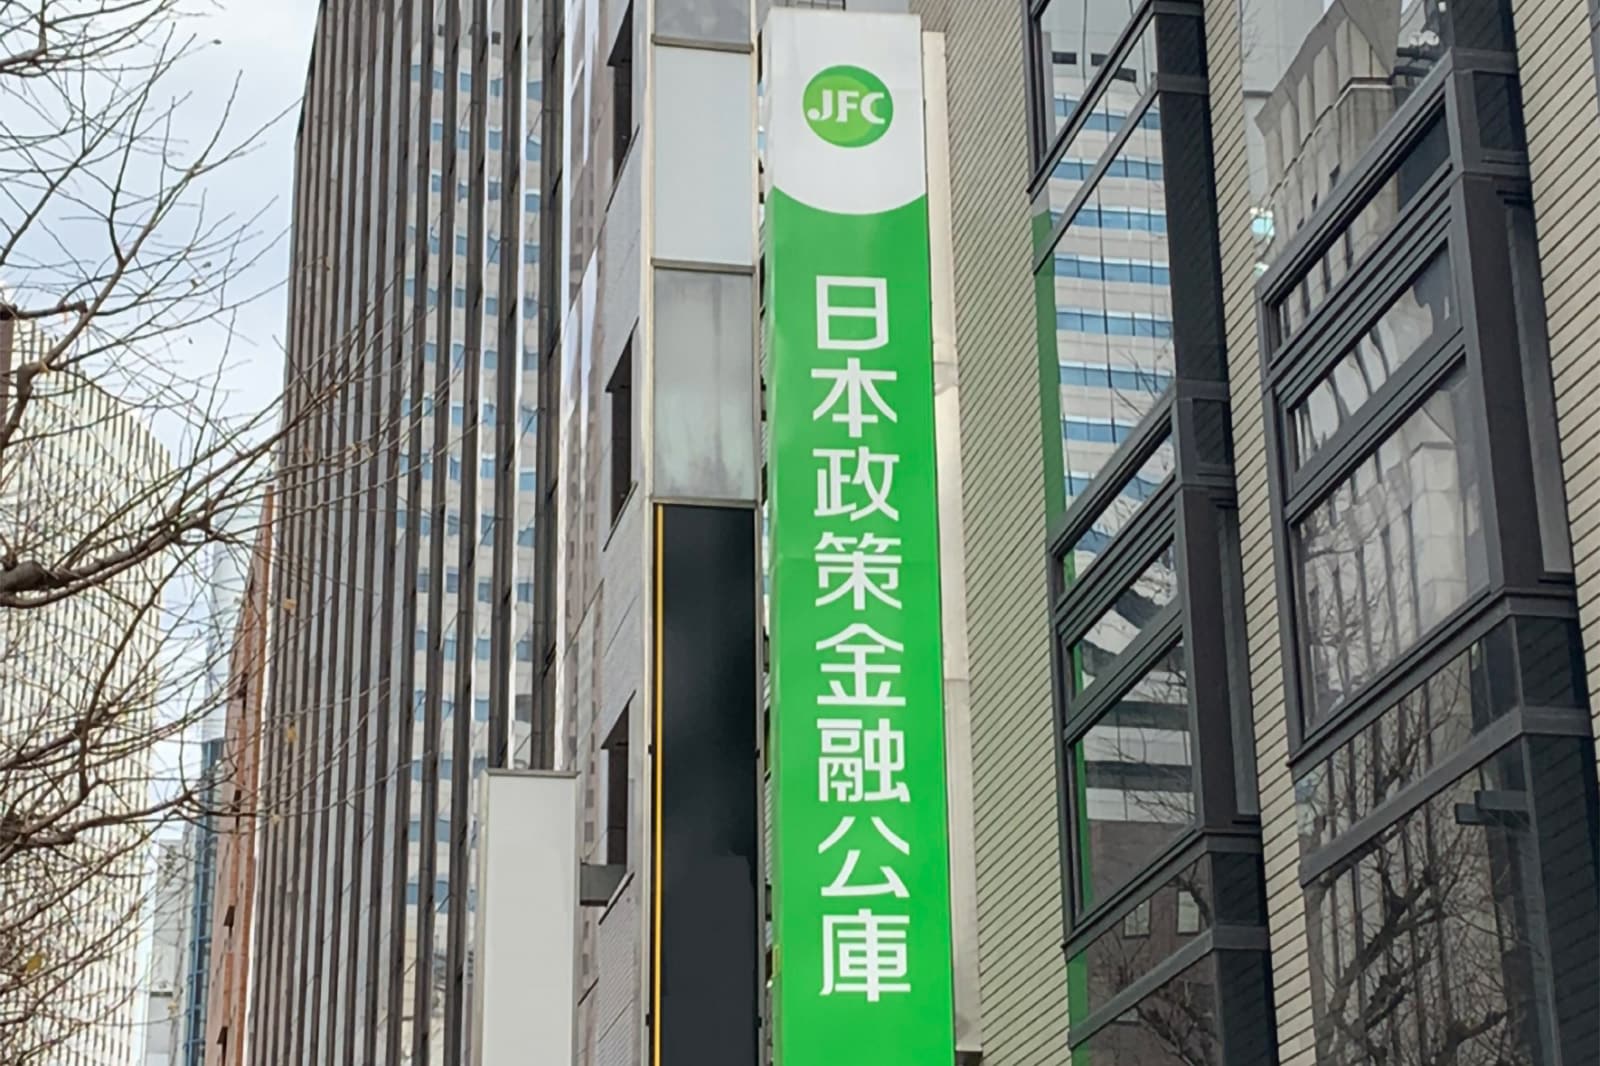 Trụ sở chính JFC - Tokyo